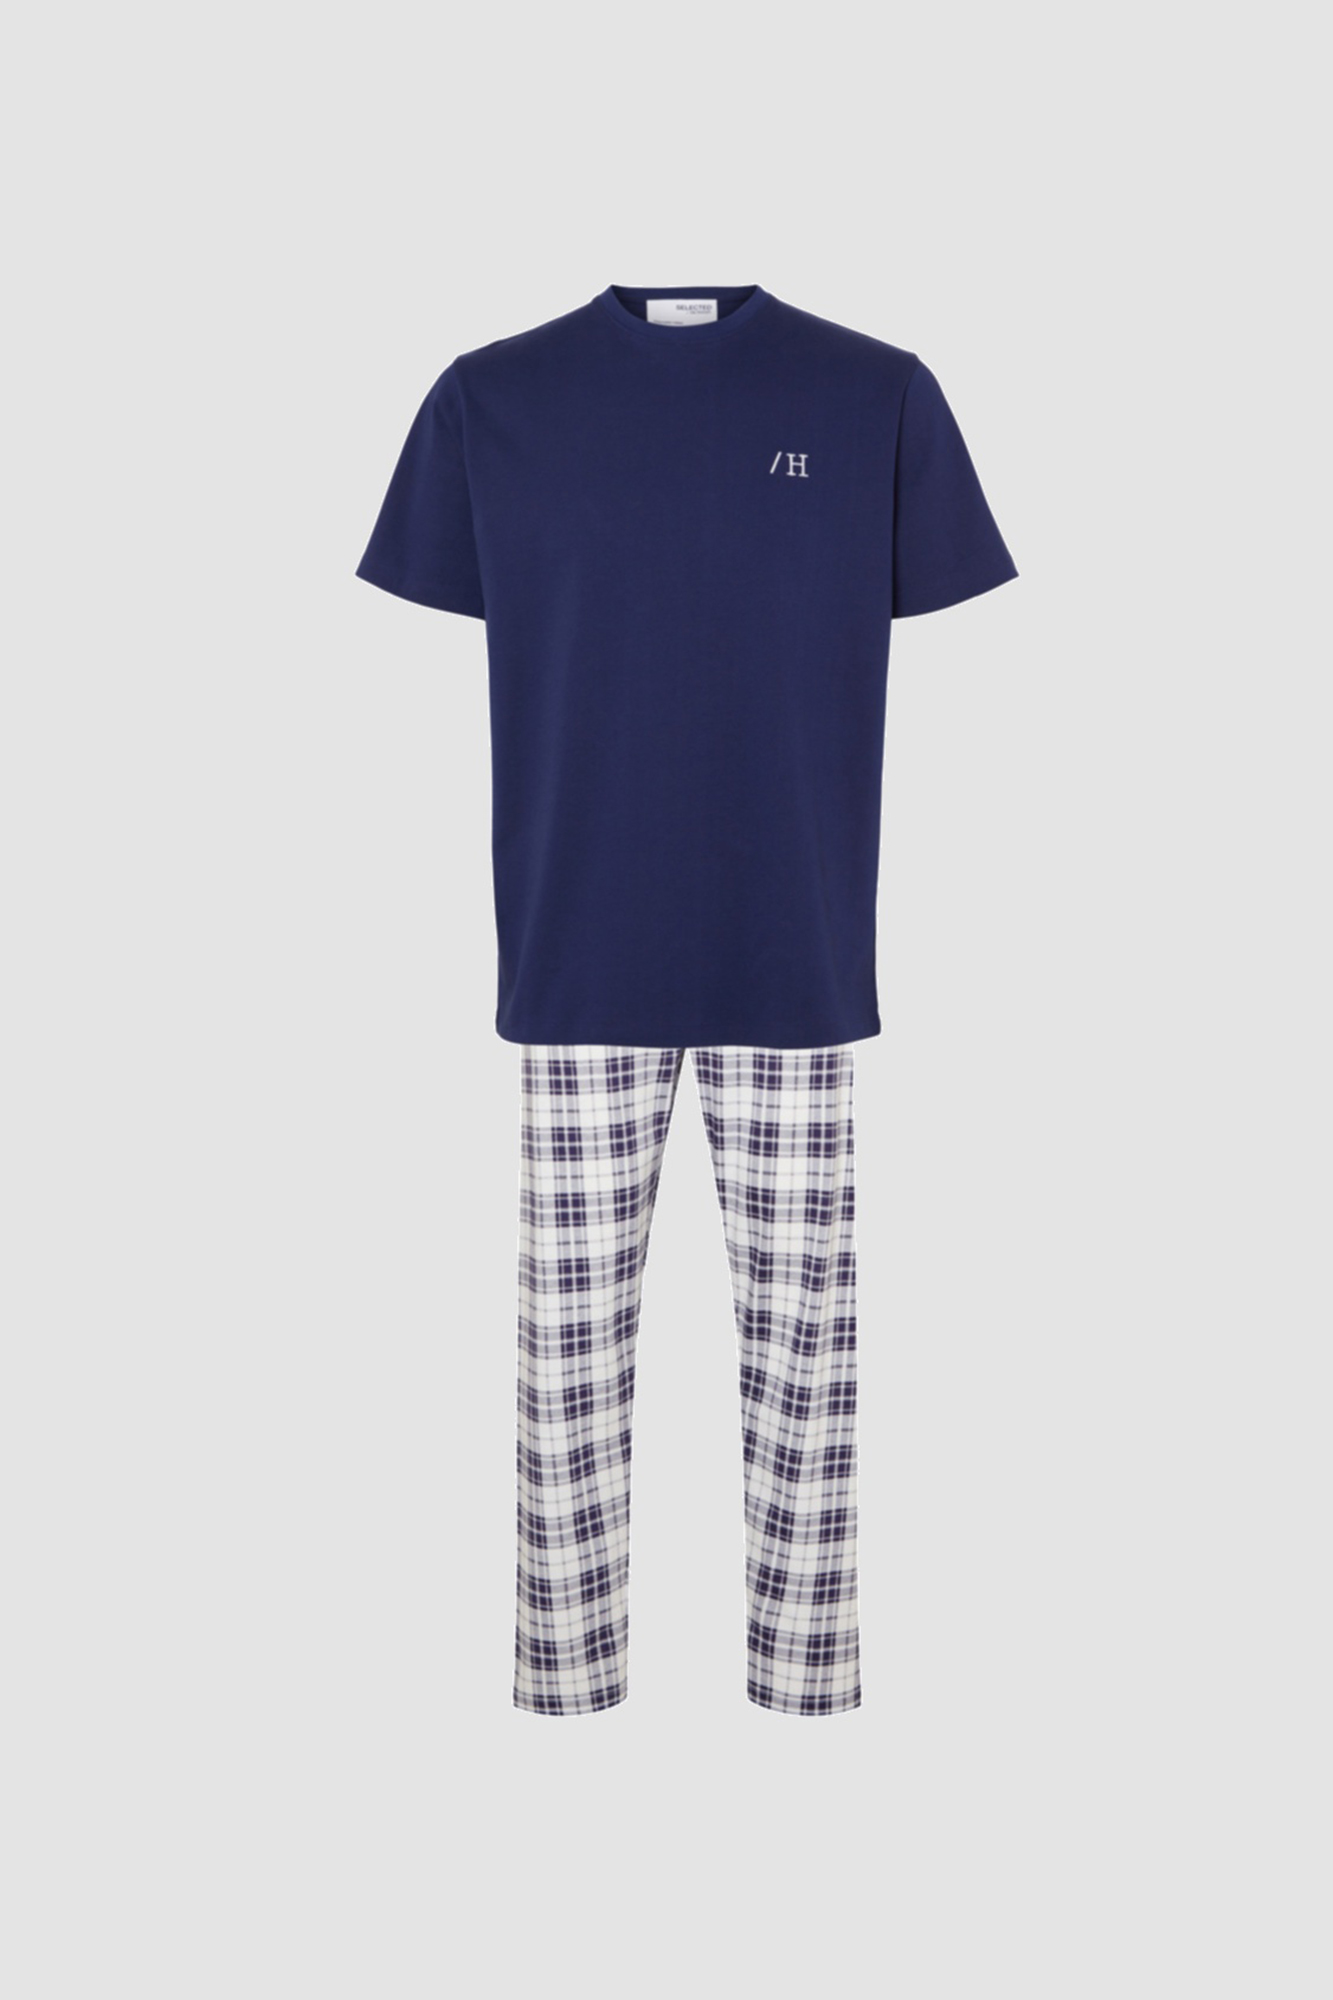 L-5XL Talla Camisa Manga Corta y Pantalones Pijama Cómodo Set para Hombre  Nuevo